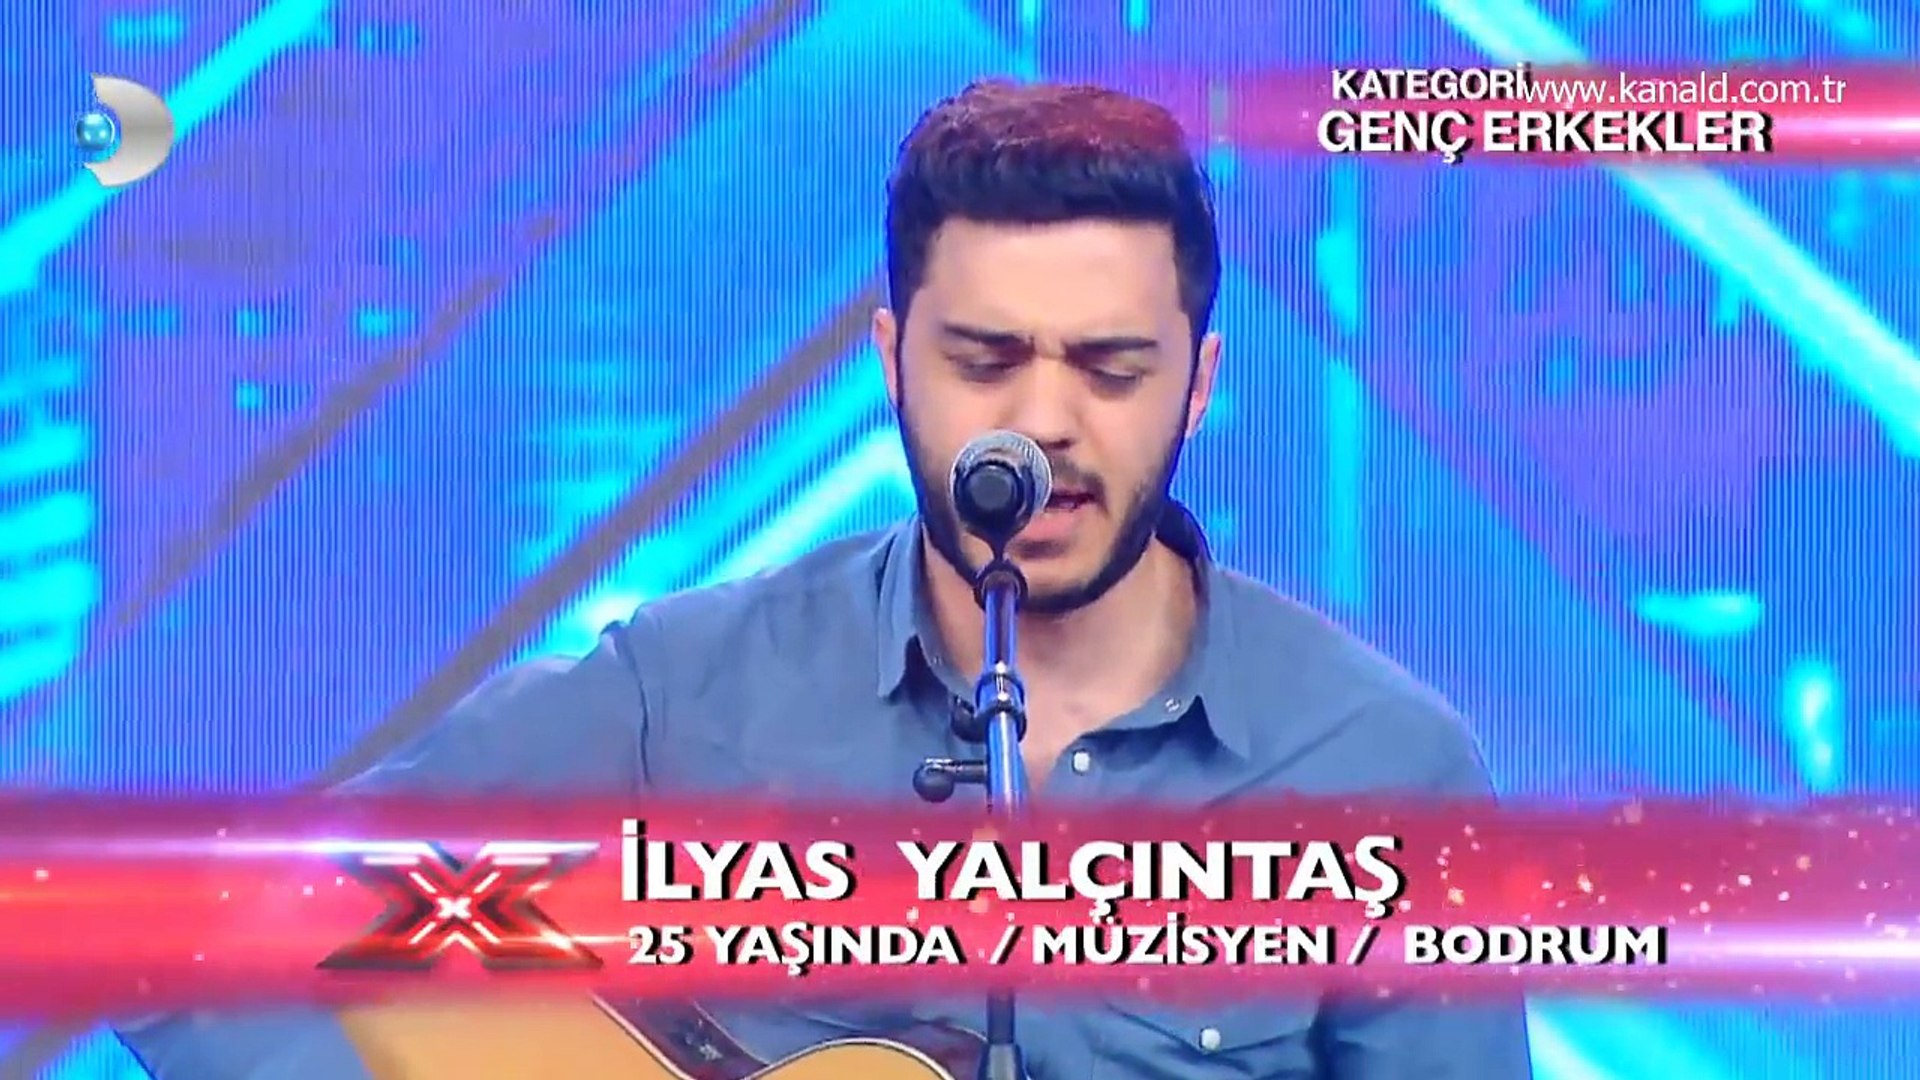 İlyas Yalçıntaş - İncir Performansı - X Factor Star Işığı